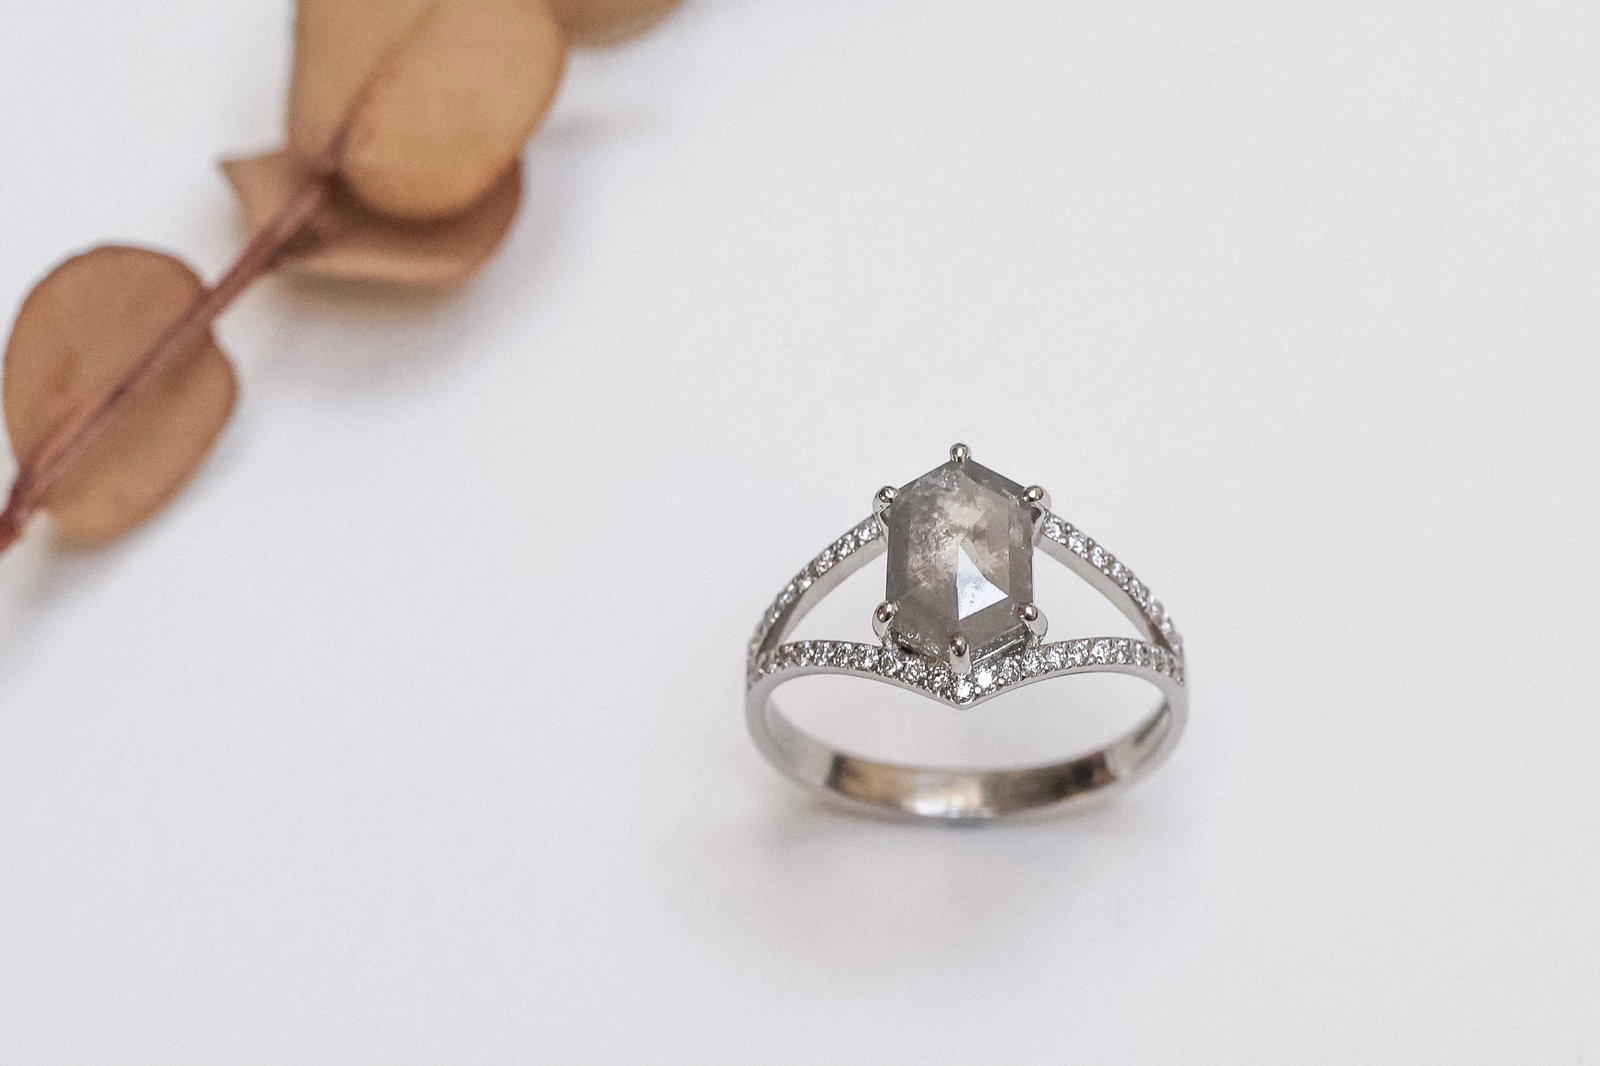 Rusty Thought - Diamond manish ring 専門店では dgipr.kpdata.gov.pk